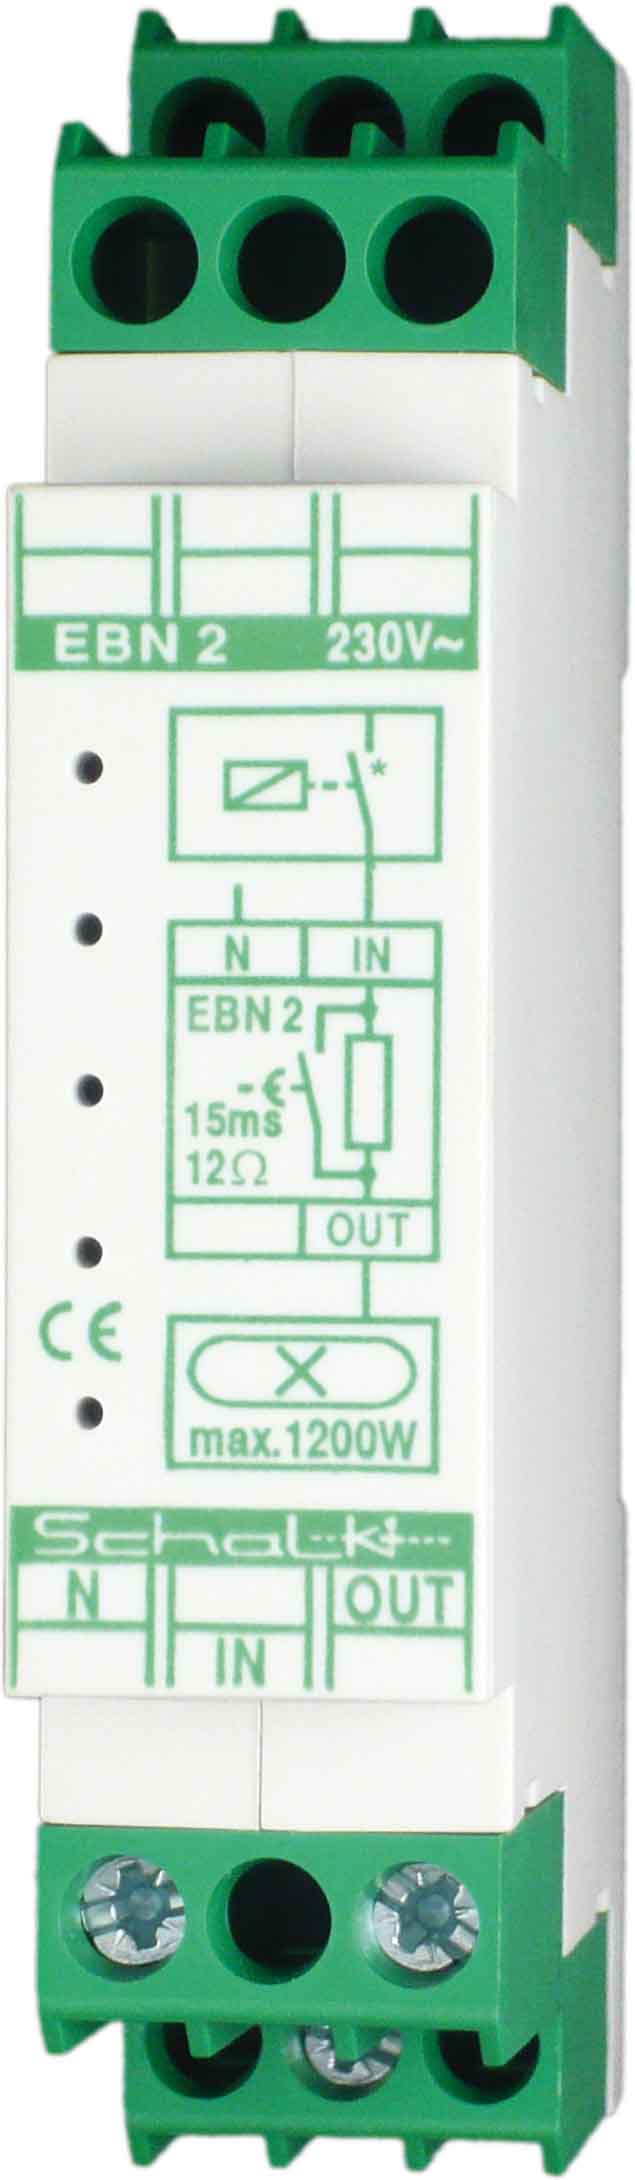 Schalk Anlaufstrombegrenzer 230VAC,16A EBN 2 - EBN209